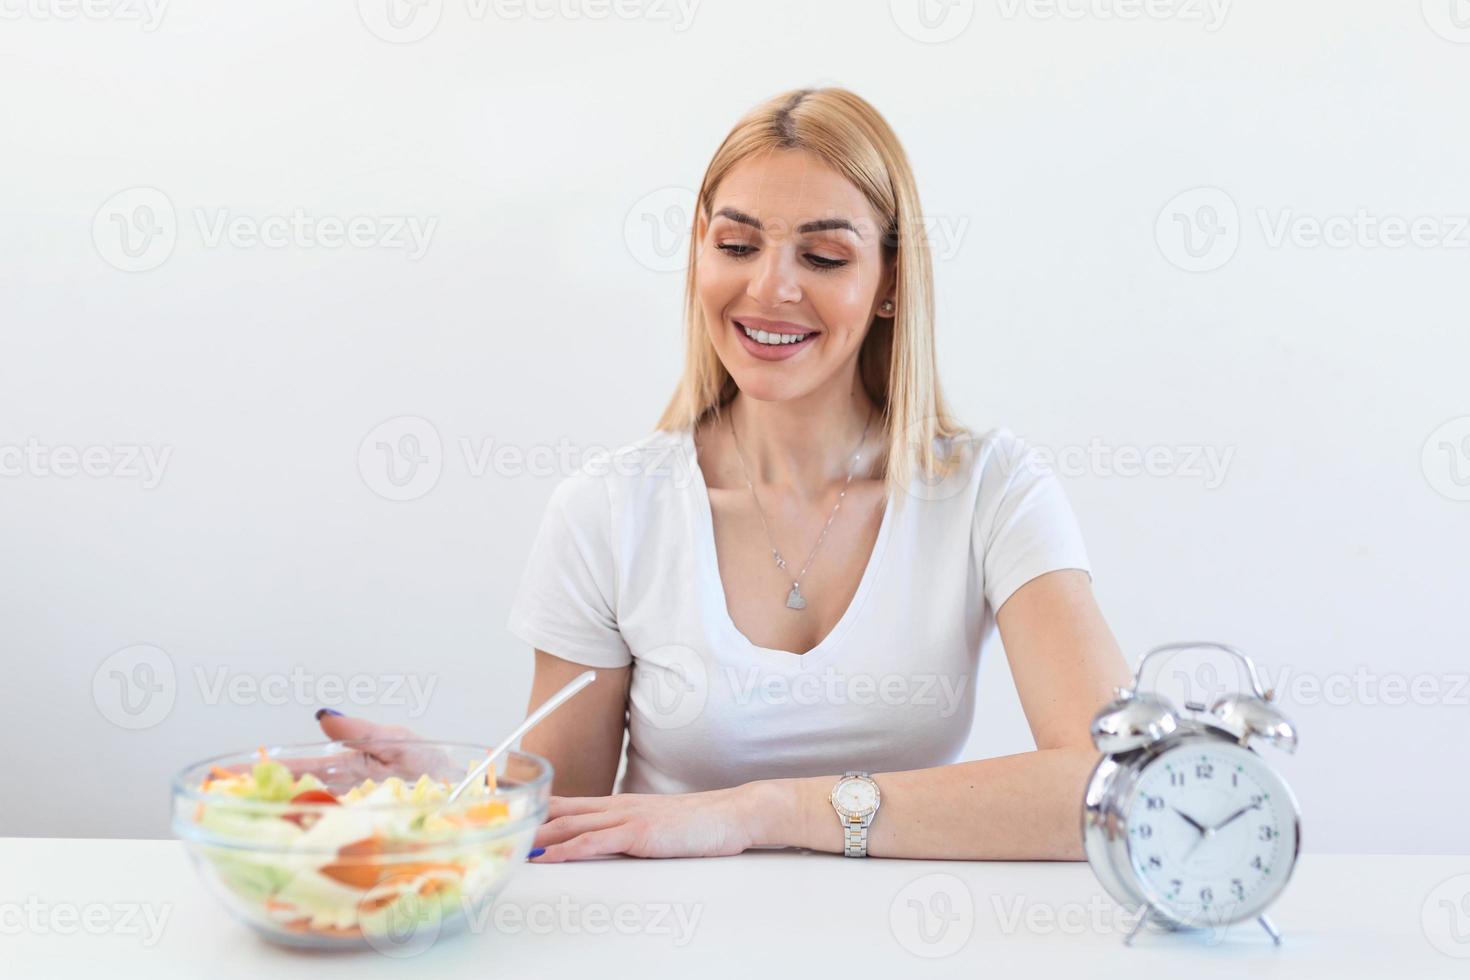 Zeit zum Abnehmen, Essenskontrolle oder Zeit zum Diätkonzept. retro-wecker, in dem frau intermittierendes fasten mit einem gesunden salatessen macht. foto